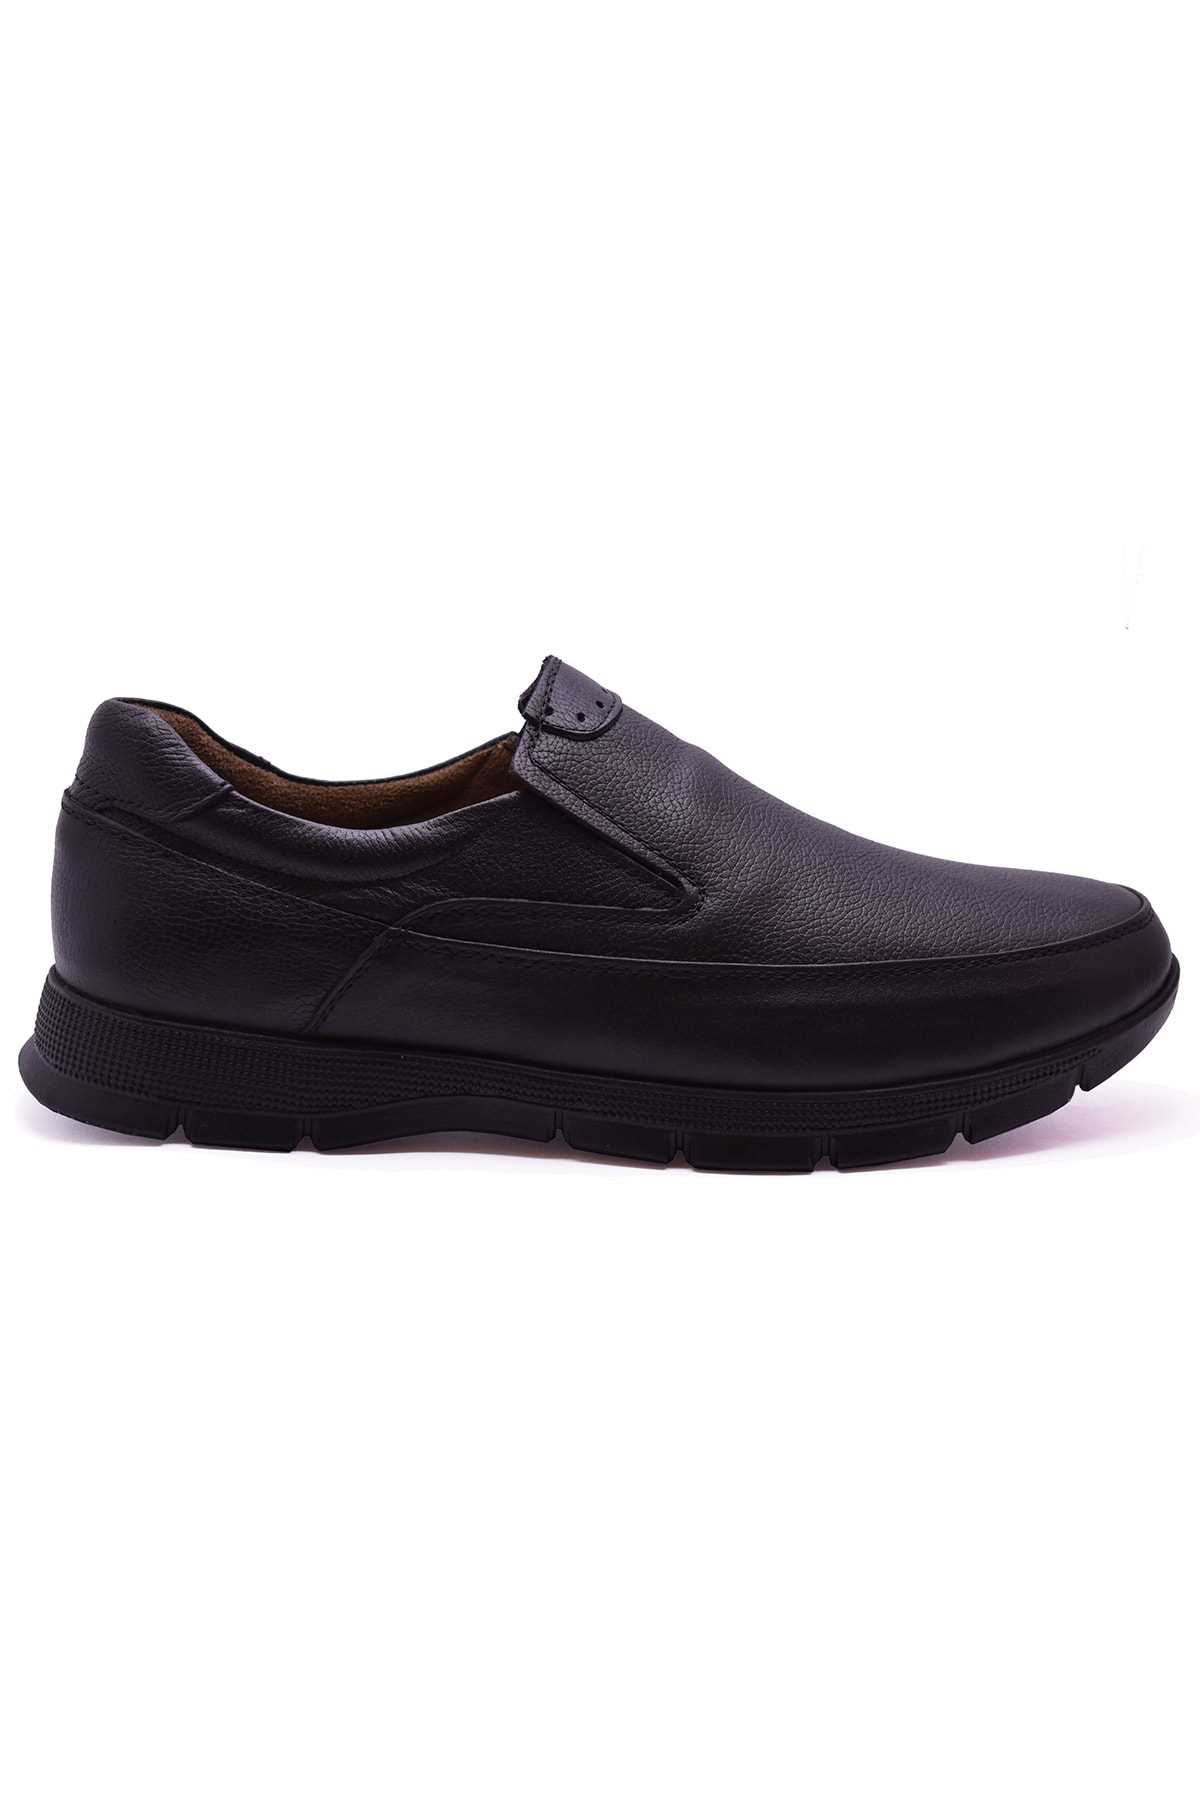 خرید انلاین کفش کلاسیک مردانه خاص برند ULUSOY رنگ مشکی کد ty48162055